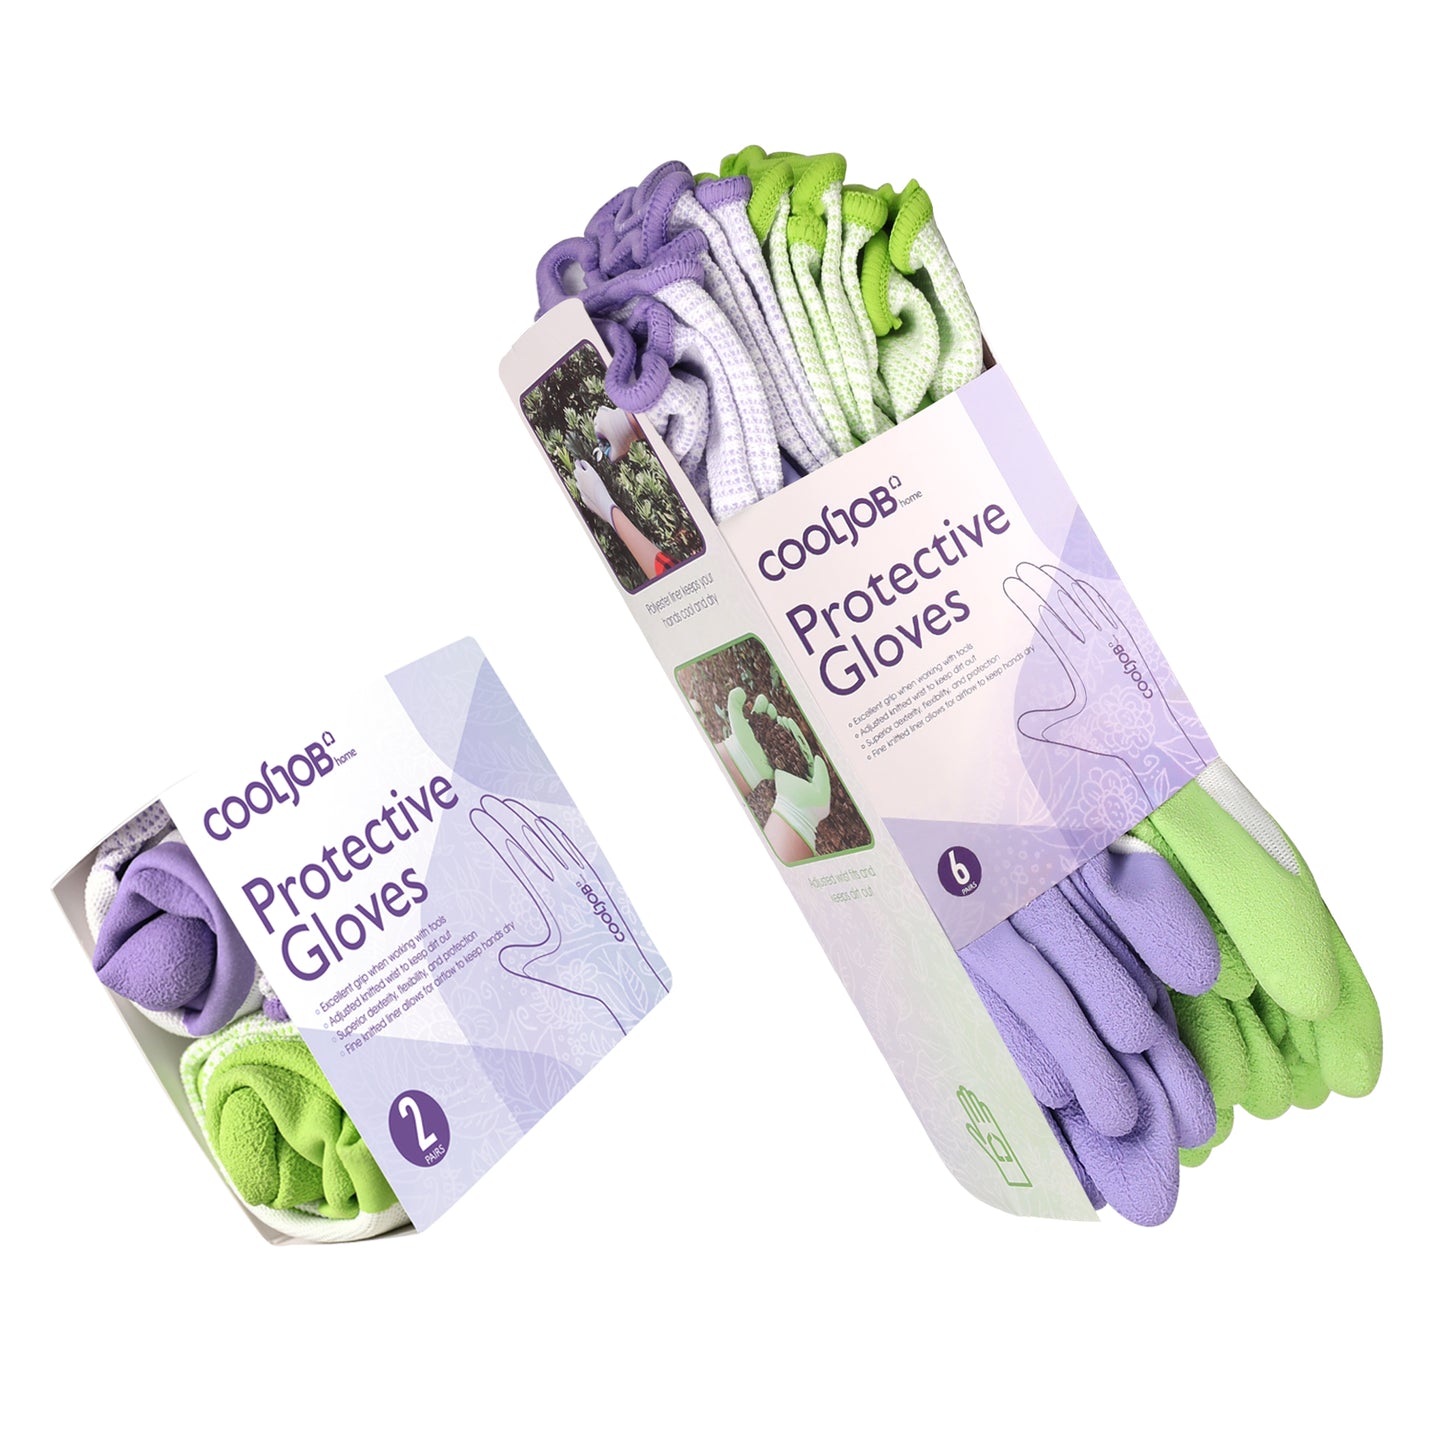 COOLJOB Garden Gloves for Women Lavender Purple / Green Apple